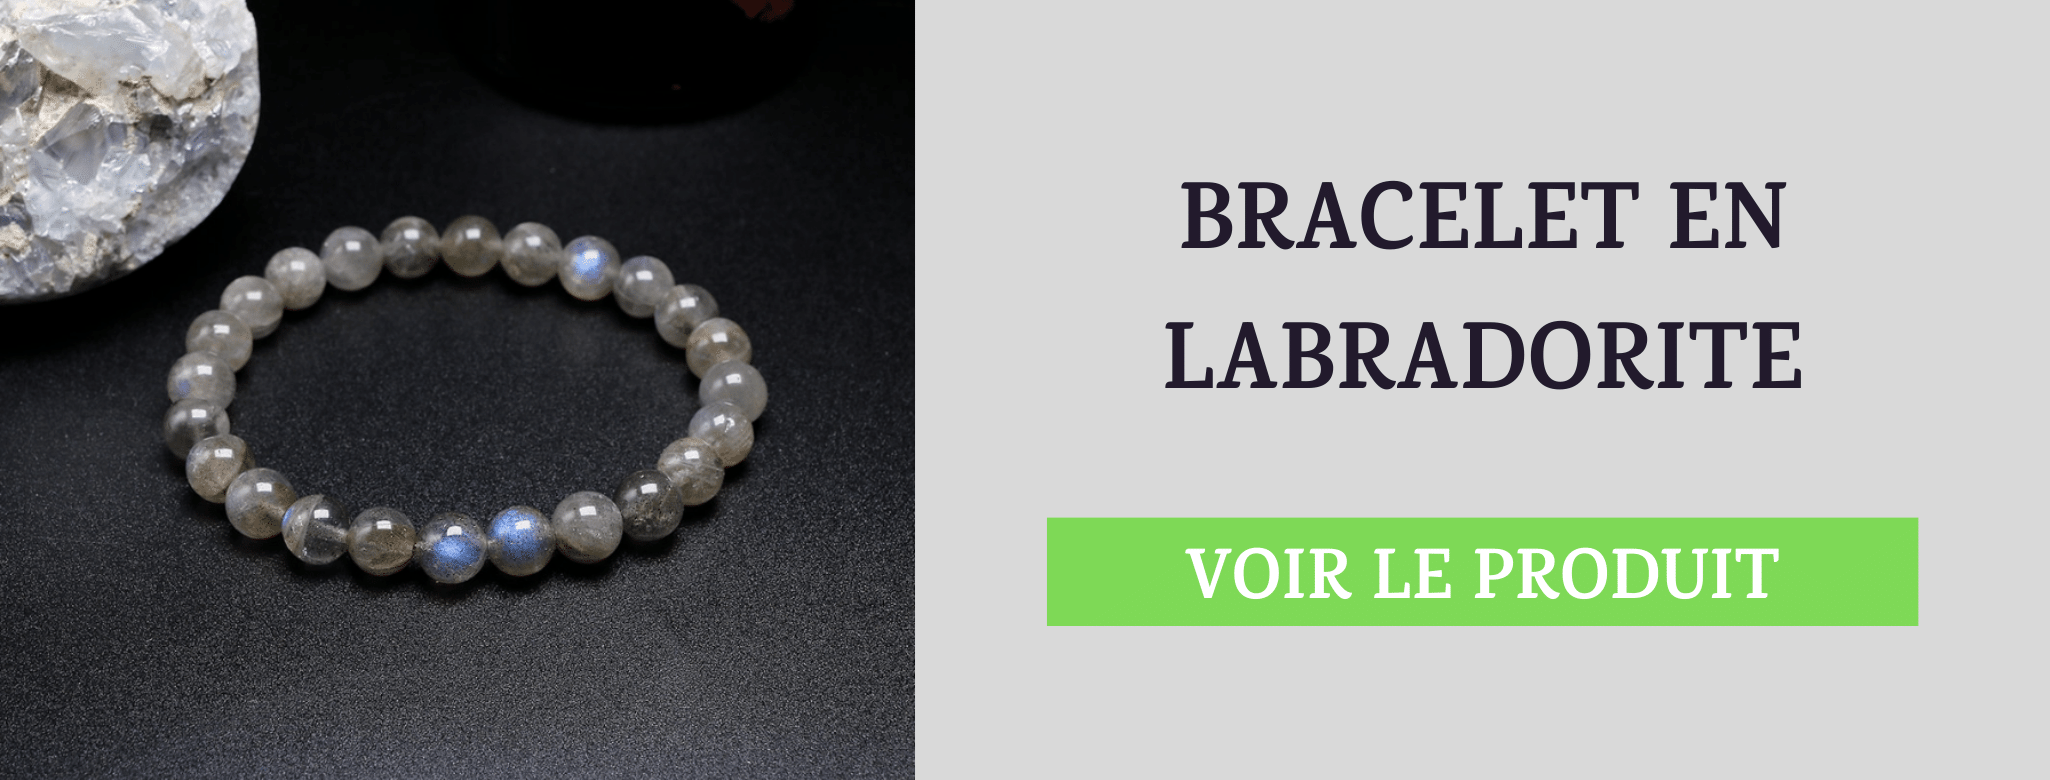 Bracelet Labradorite Dépendance Affective